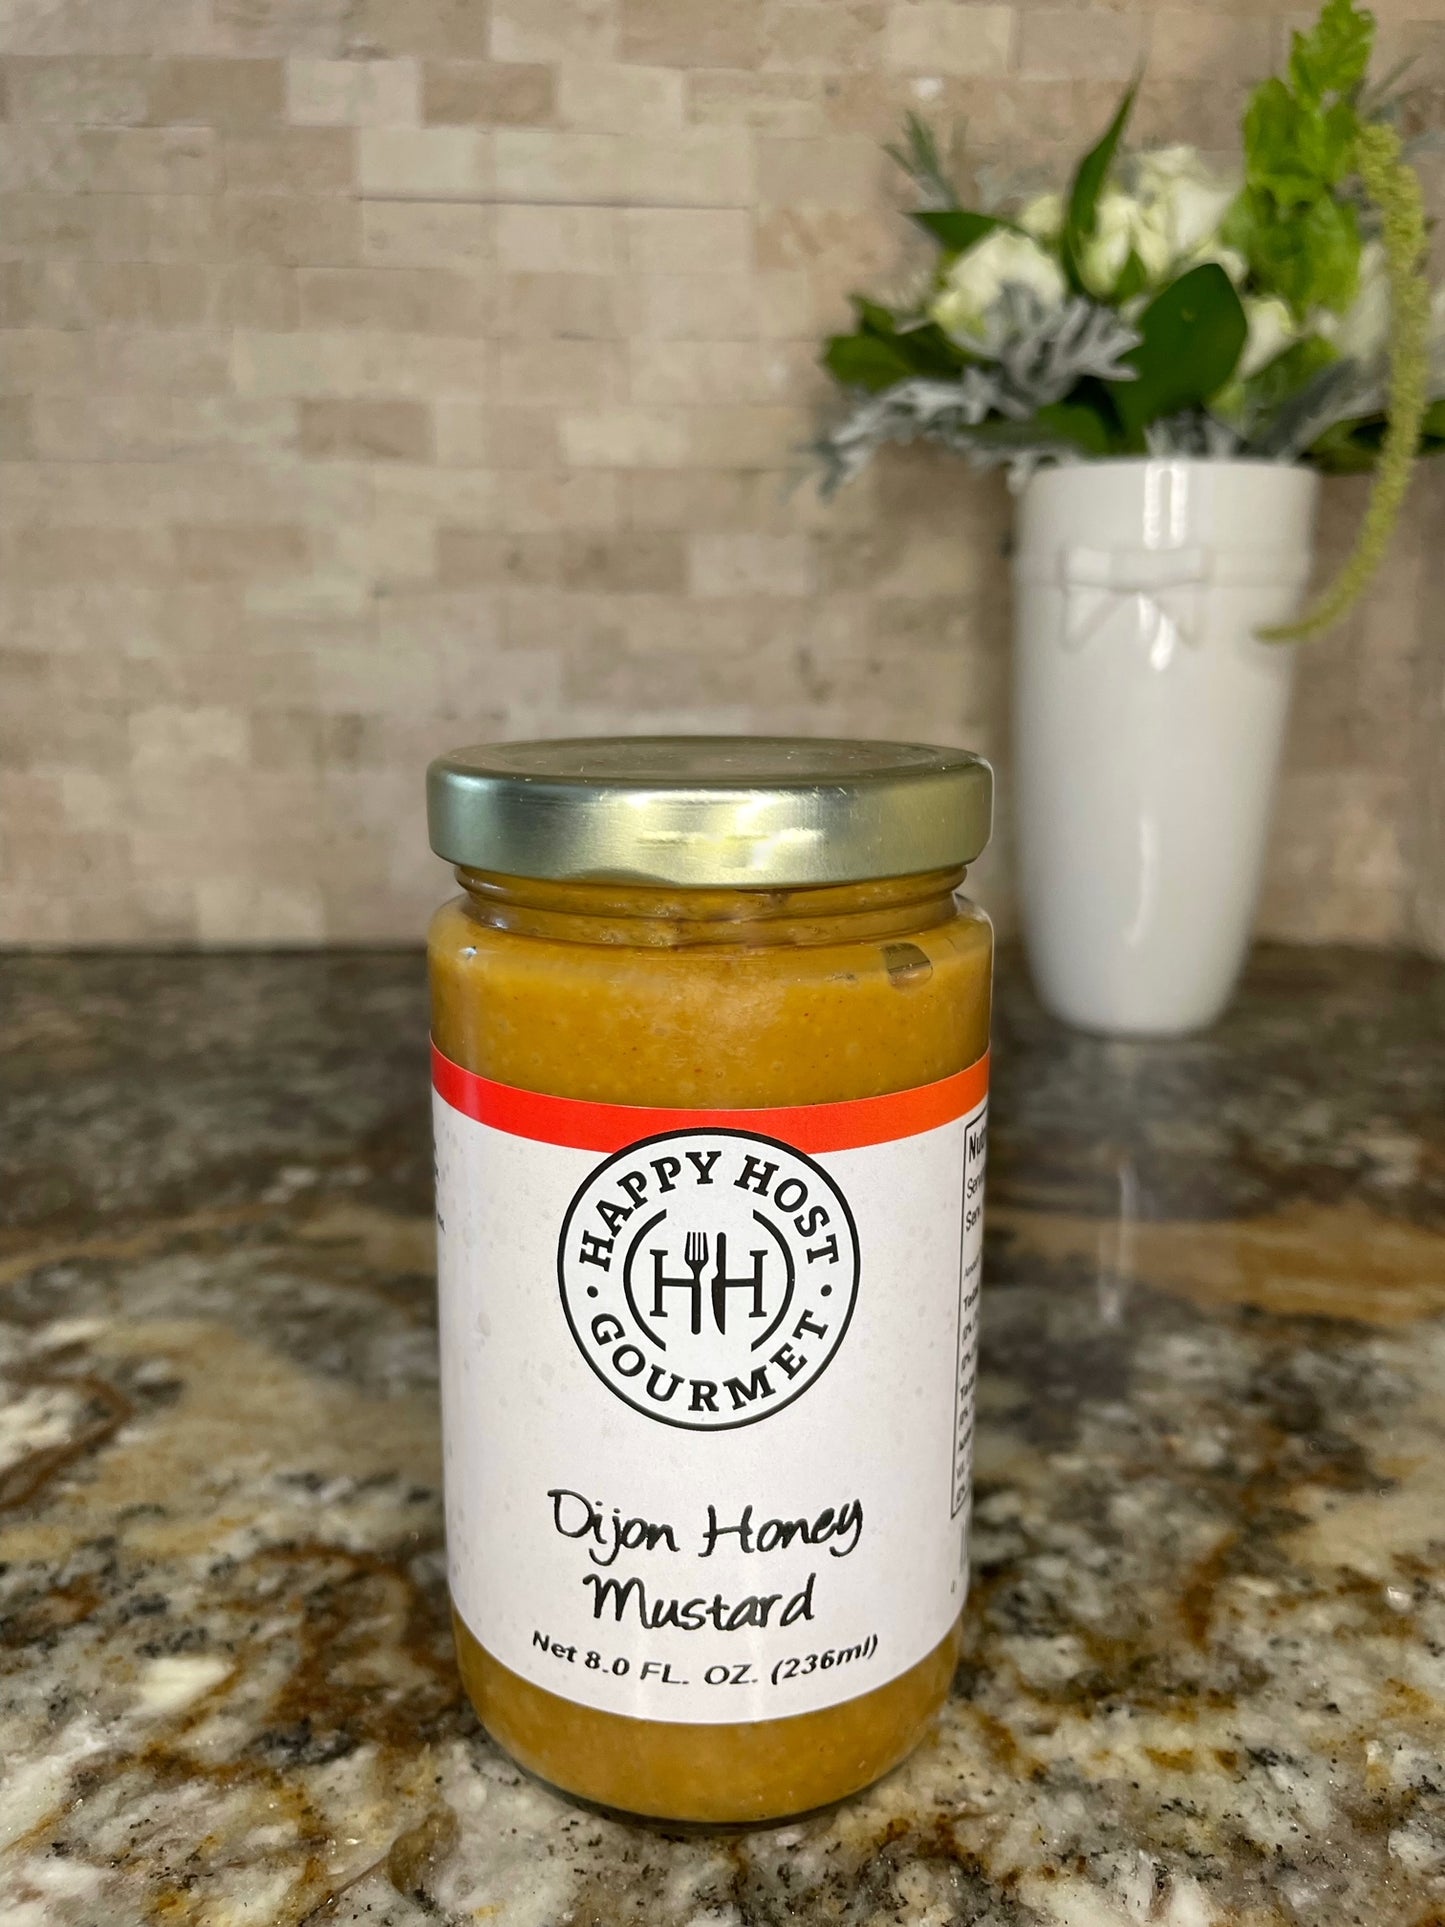 Dijon Honey Mustard